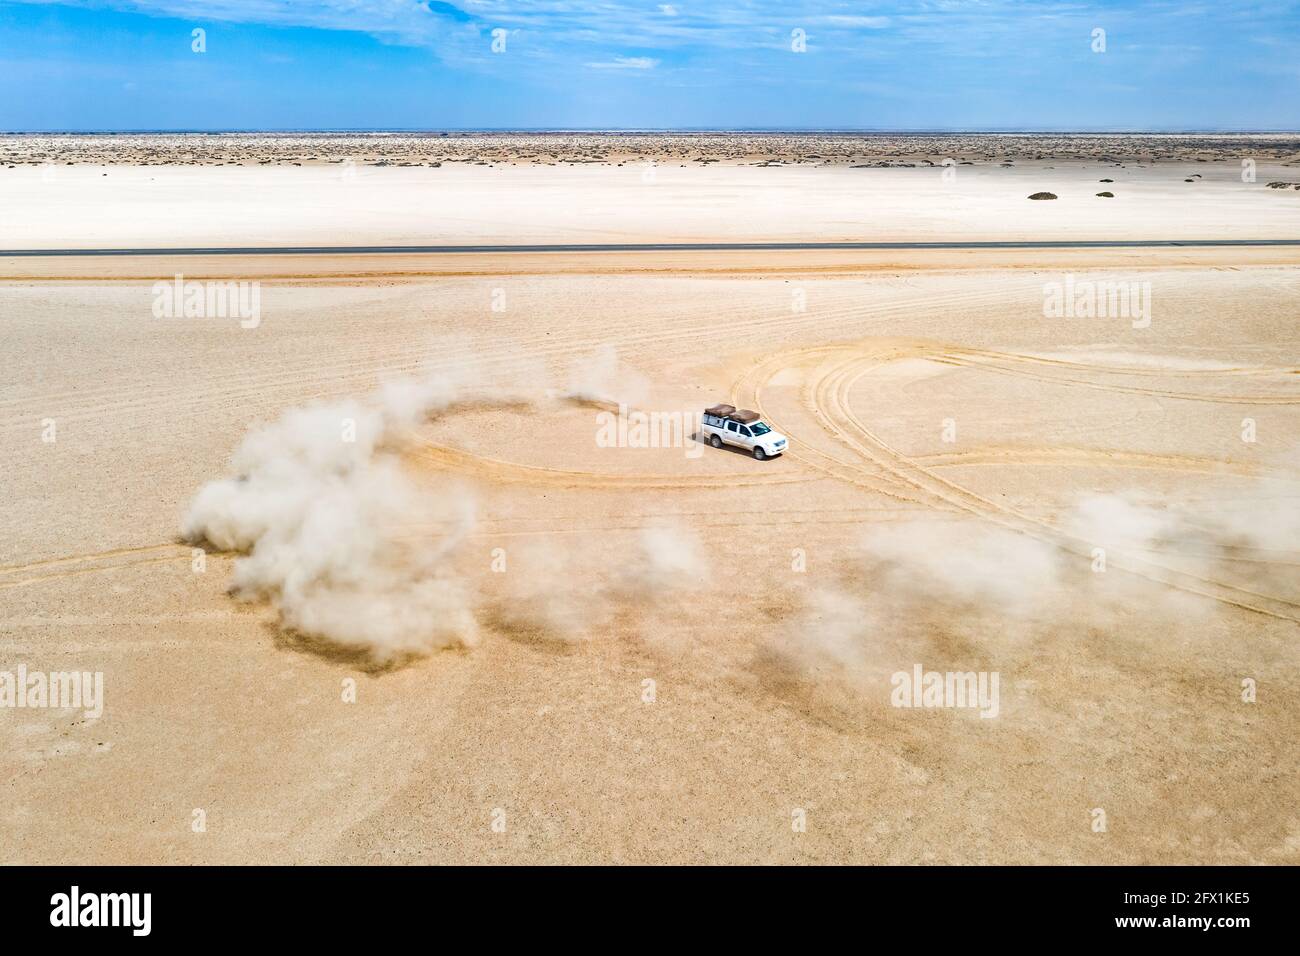 Une vue en paysage montrant une dune de SUV blanche qui dérive dans le désert, envoyant le sable s'étendre dans l'air. Namibie, Afrique. Photographie de drones aériens Banque D'Images